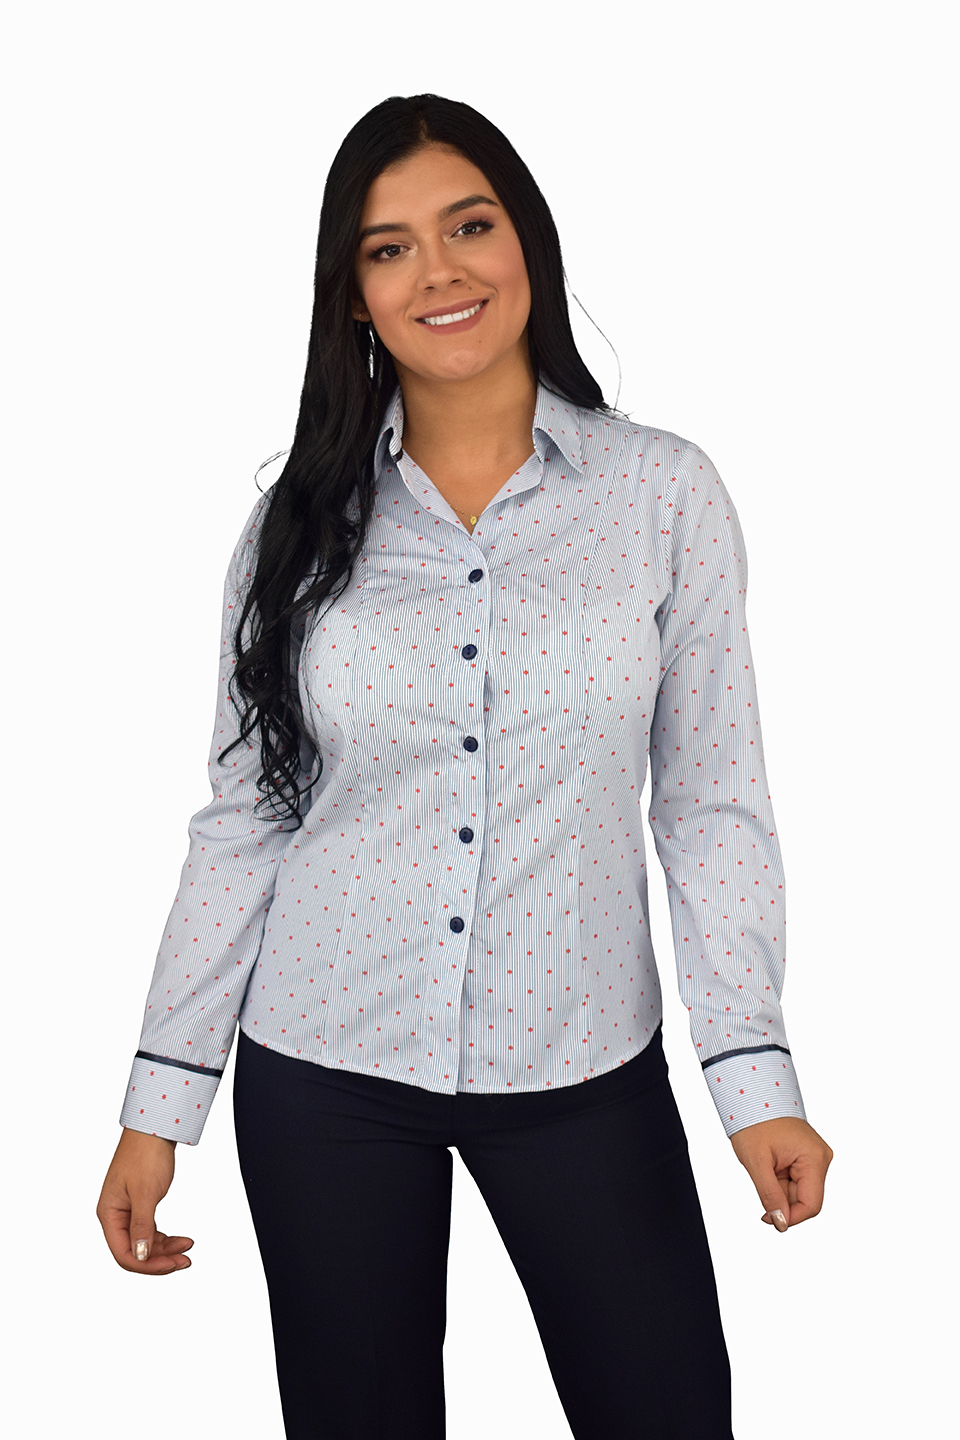 uniforme empresarial blusas ref: | Celmy diseño y fabricación de uniformes empresariales y uniformes ejecutivos